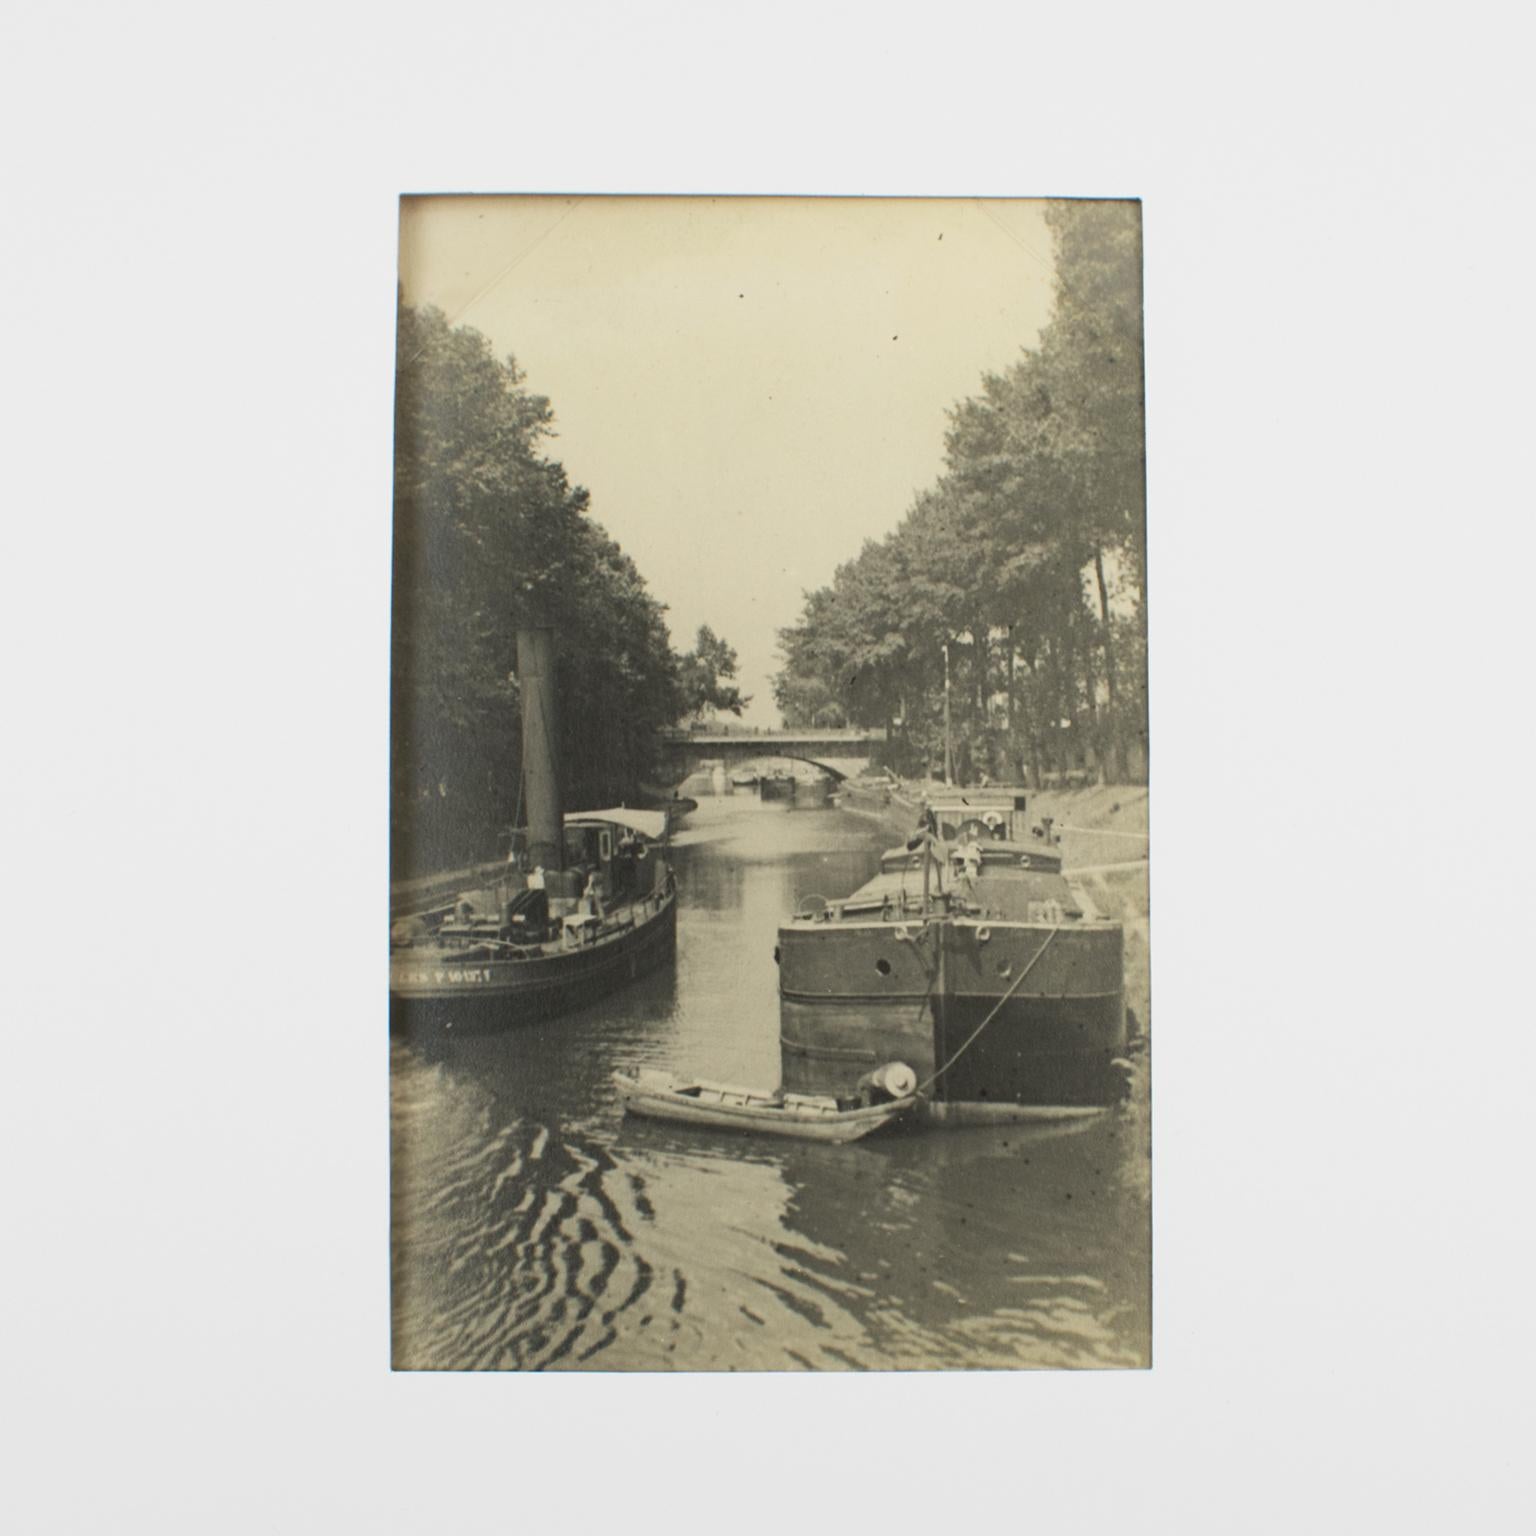 Barge Boats près de Paris, France 1926, photographie en gélatine argentique noire et blanche - Photograph de Unknown